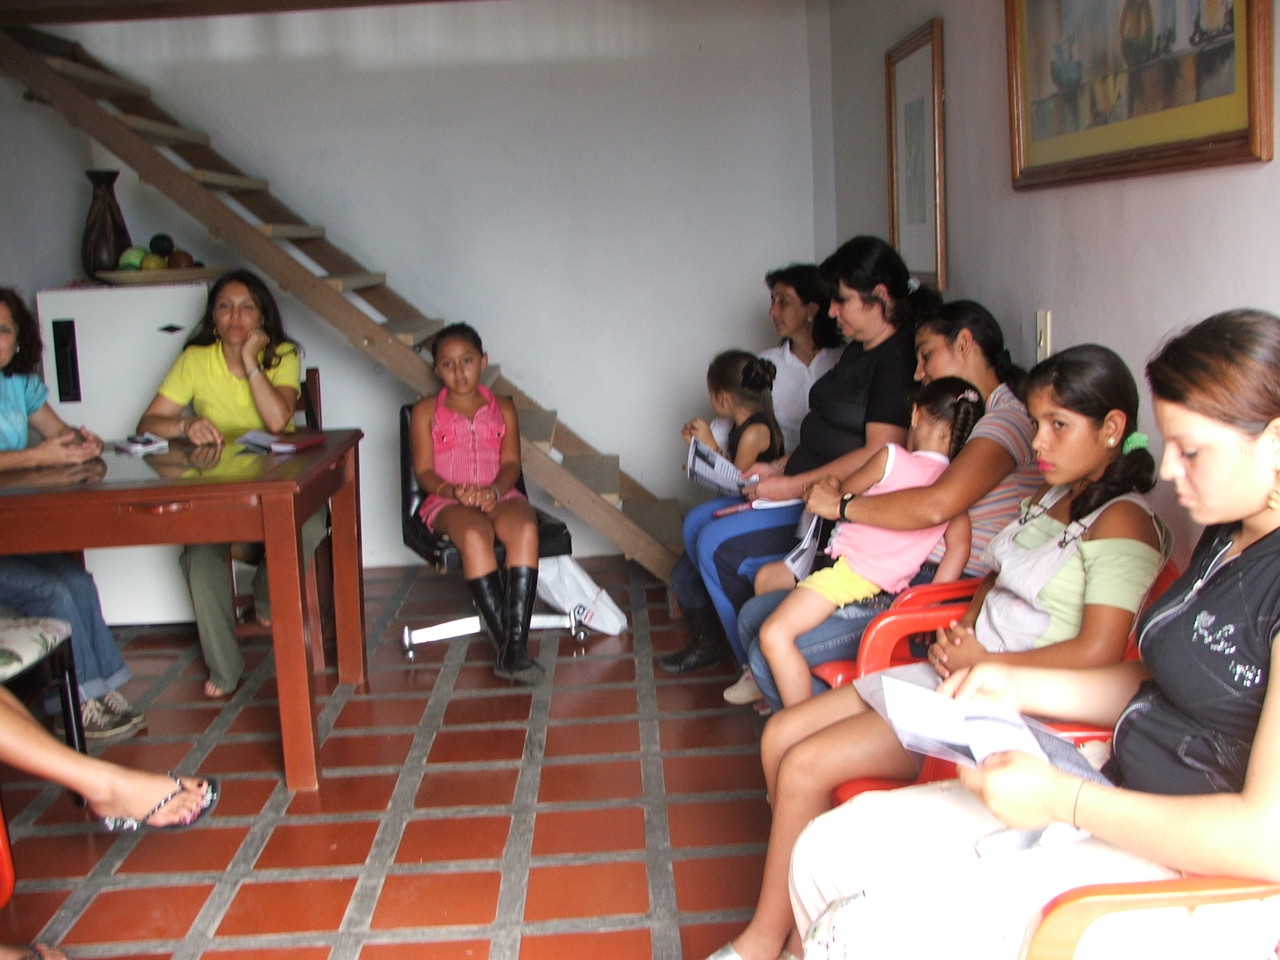 2010. Primera reunión convocada para trabajar con las mujeres de las veredas aledañas talleres de manualidades.